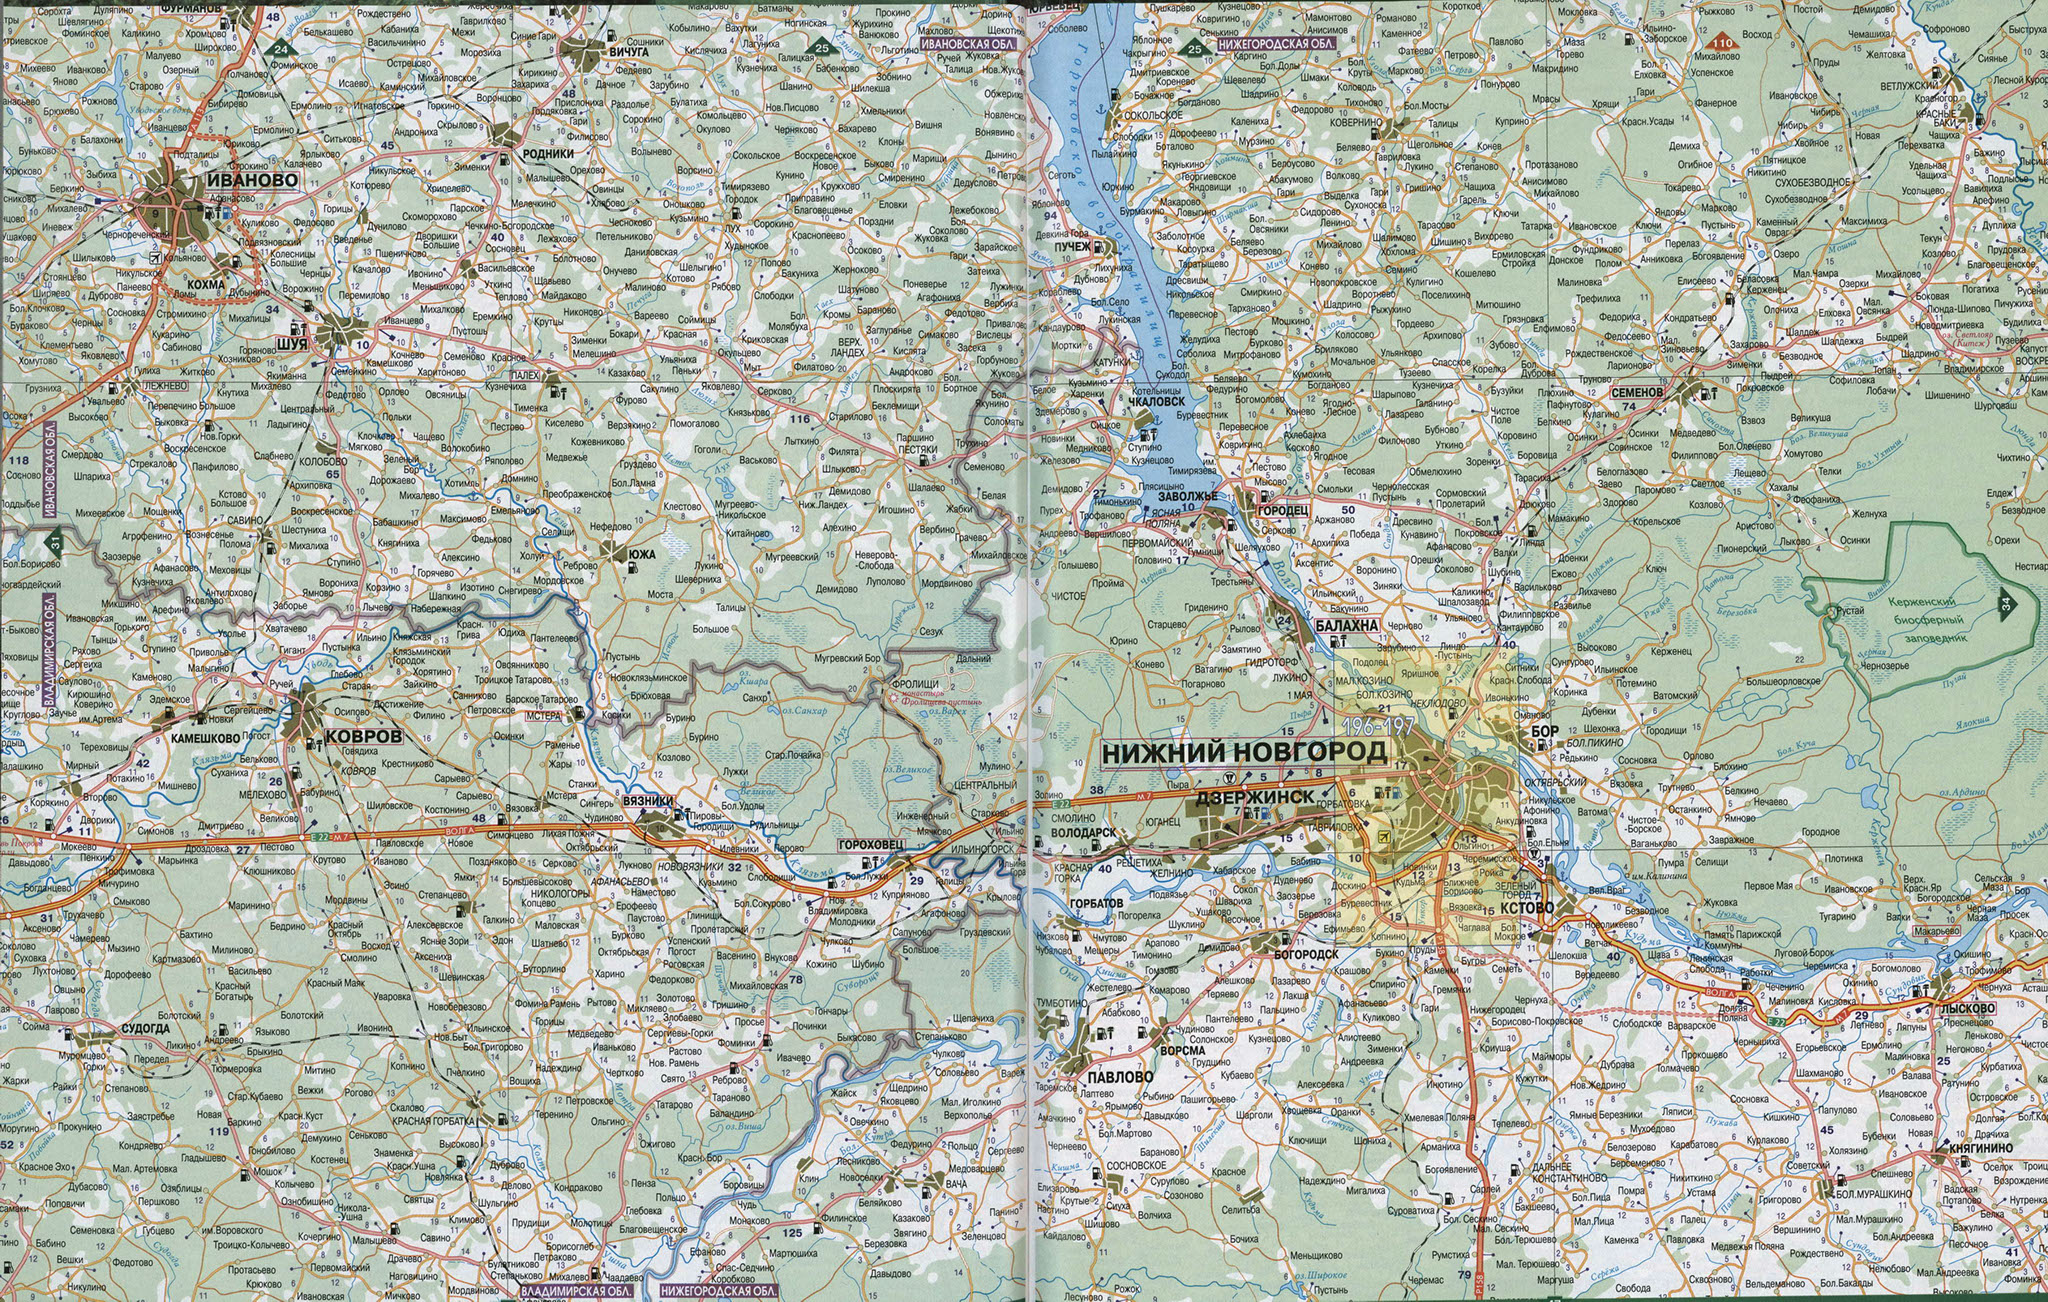 Карта Нижегородской области